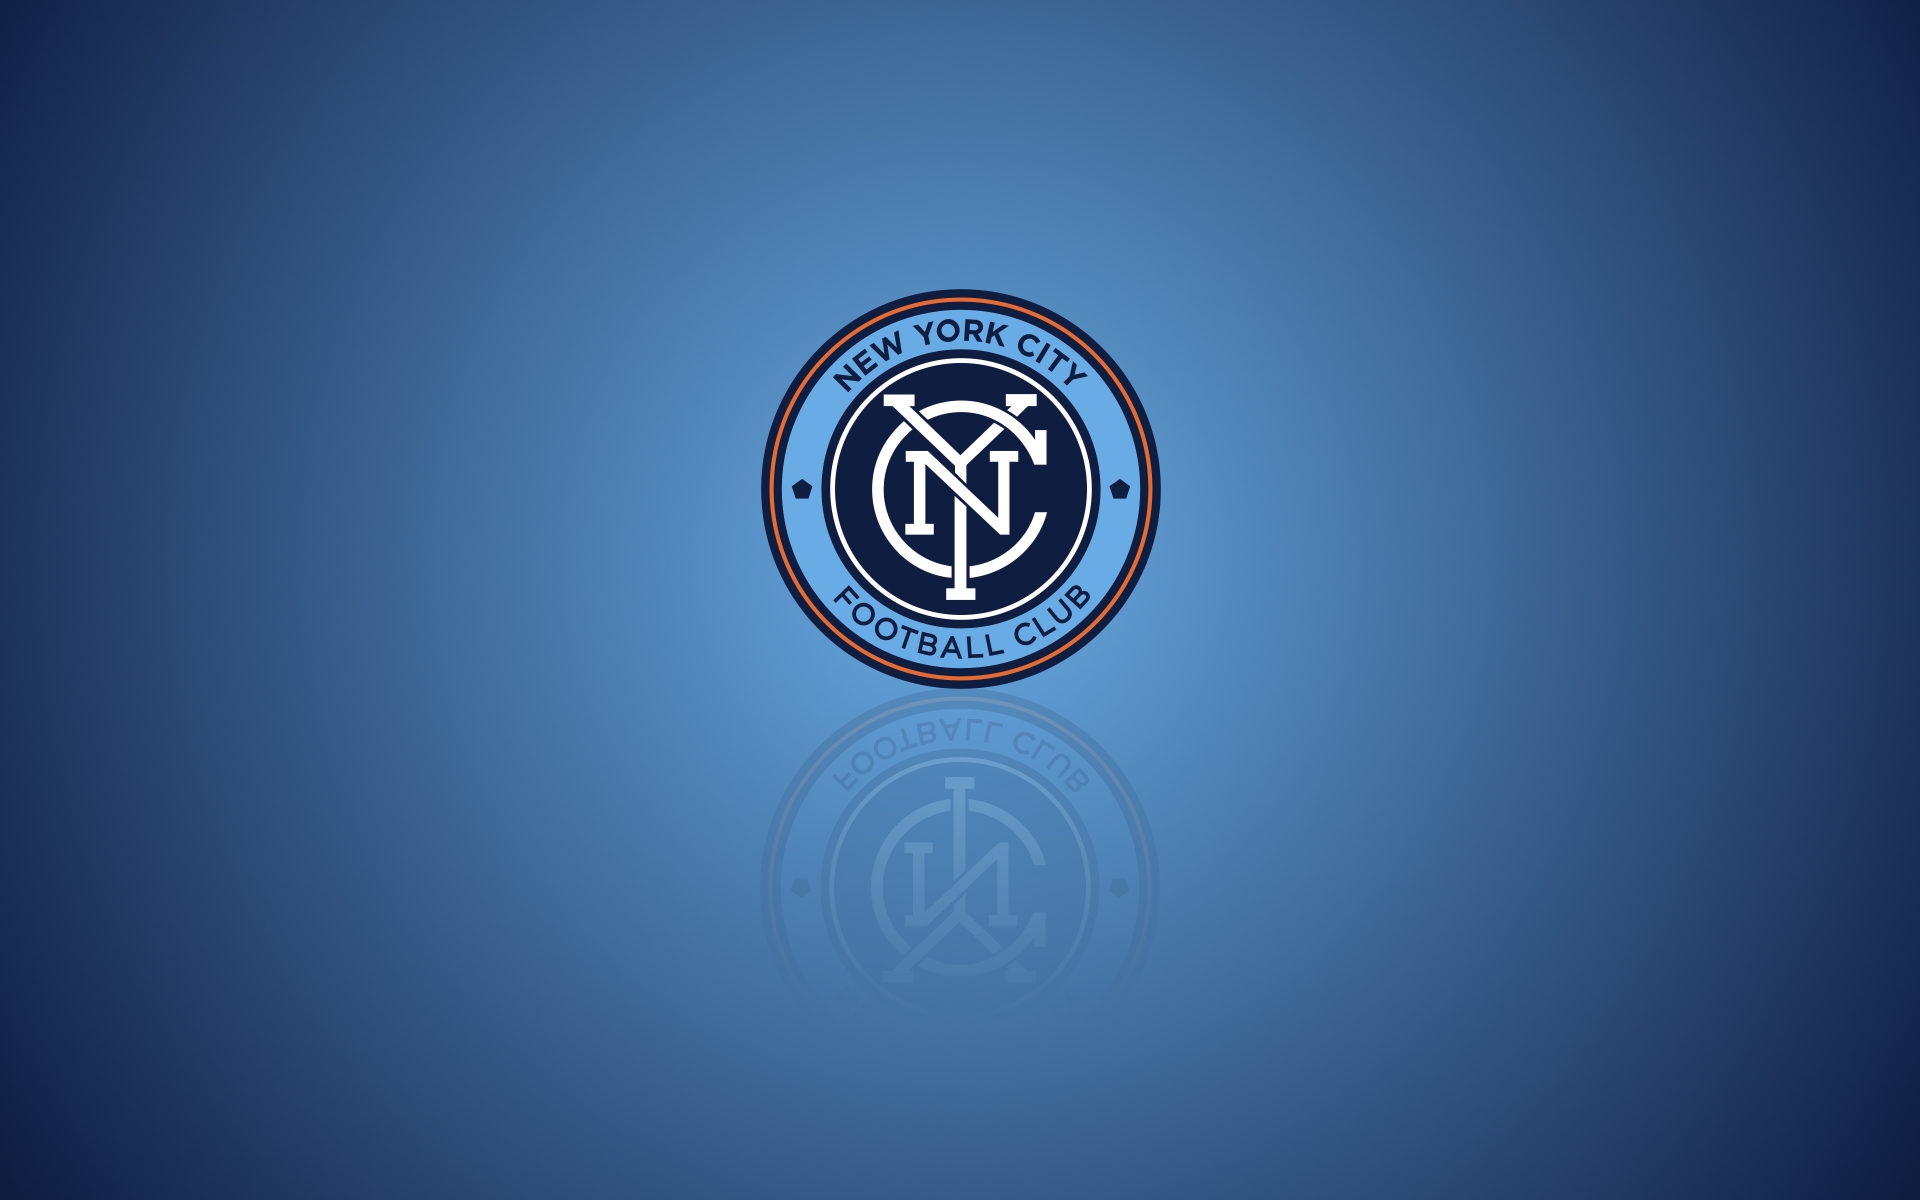 Descarga gratuita de fondo de pantalla para móvil de Fútbol, Logo, Emblema, Deporte, Mls, Fc De La Ciudad De Nueva York.